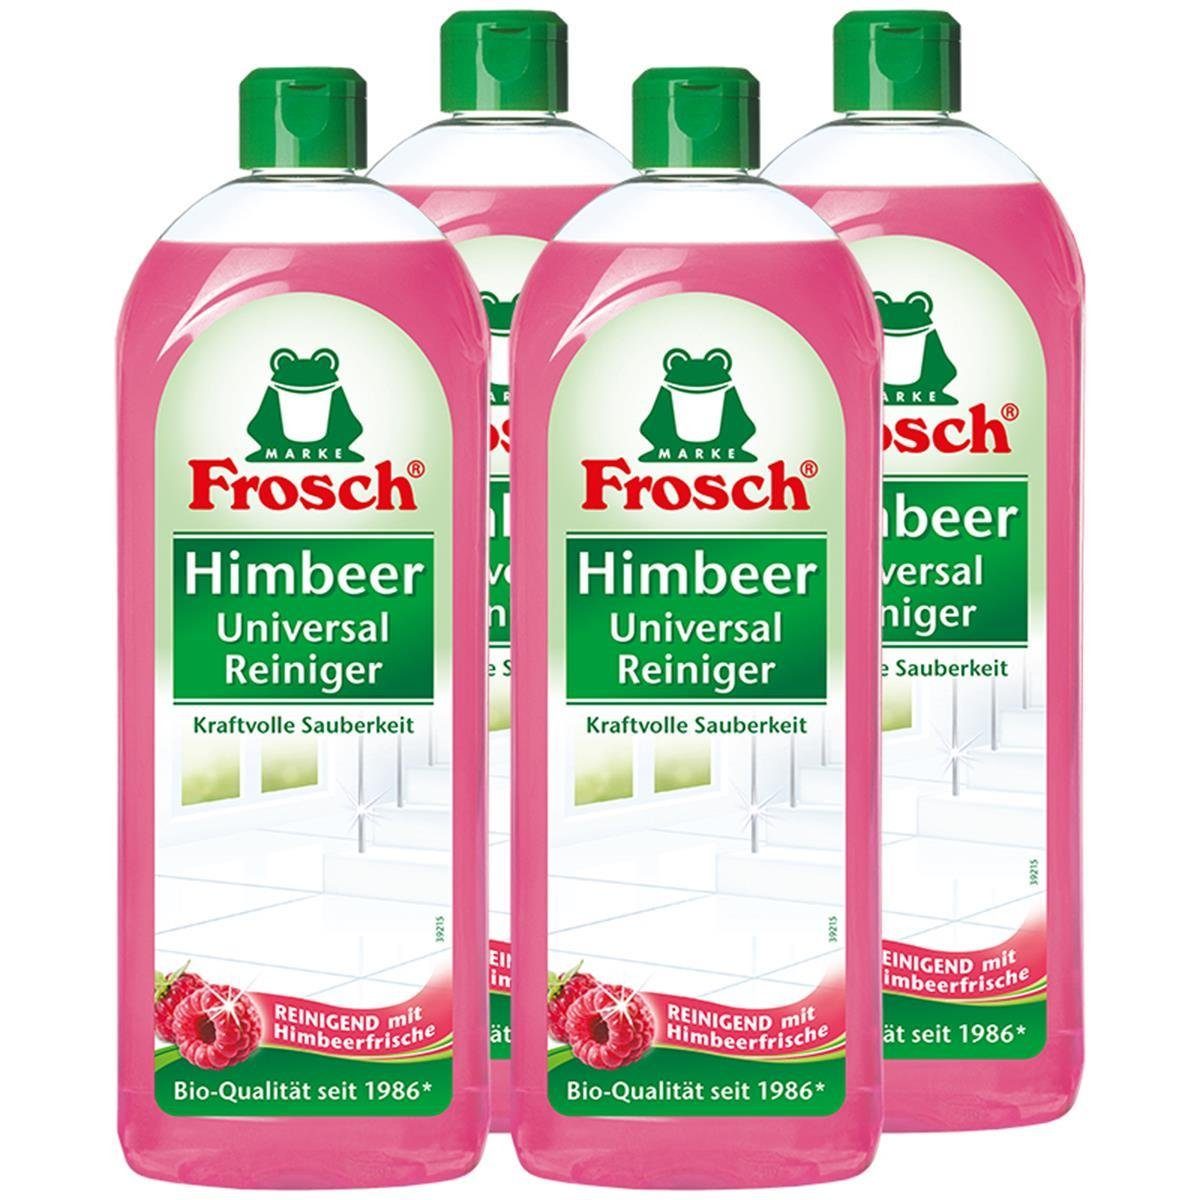 FROSCH Frosch Himbeer Universal-Reiniger 750 ml - Kraftvolle Sauberkeit (4er Allzweckreiniger